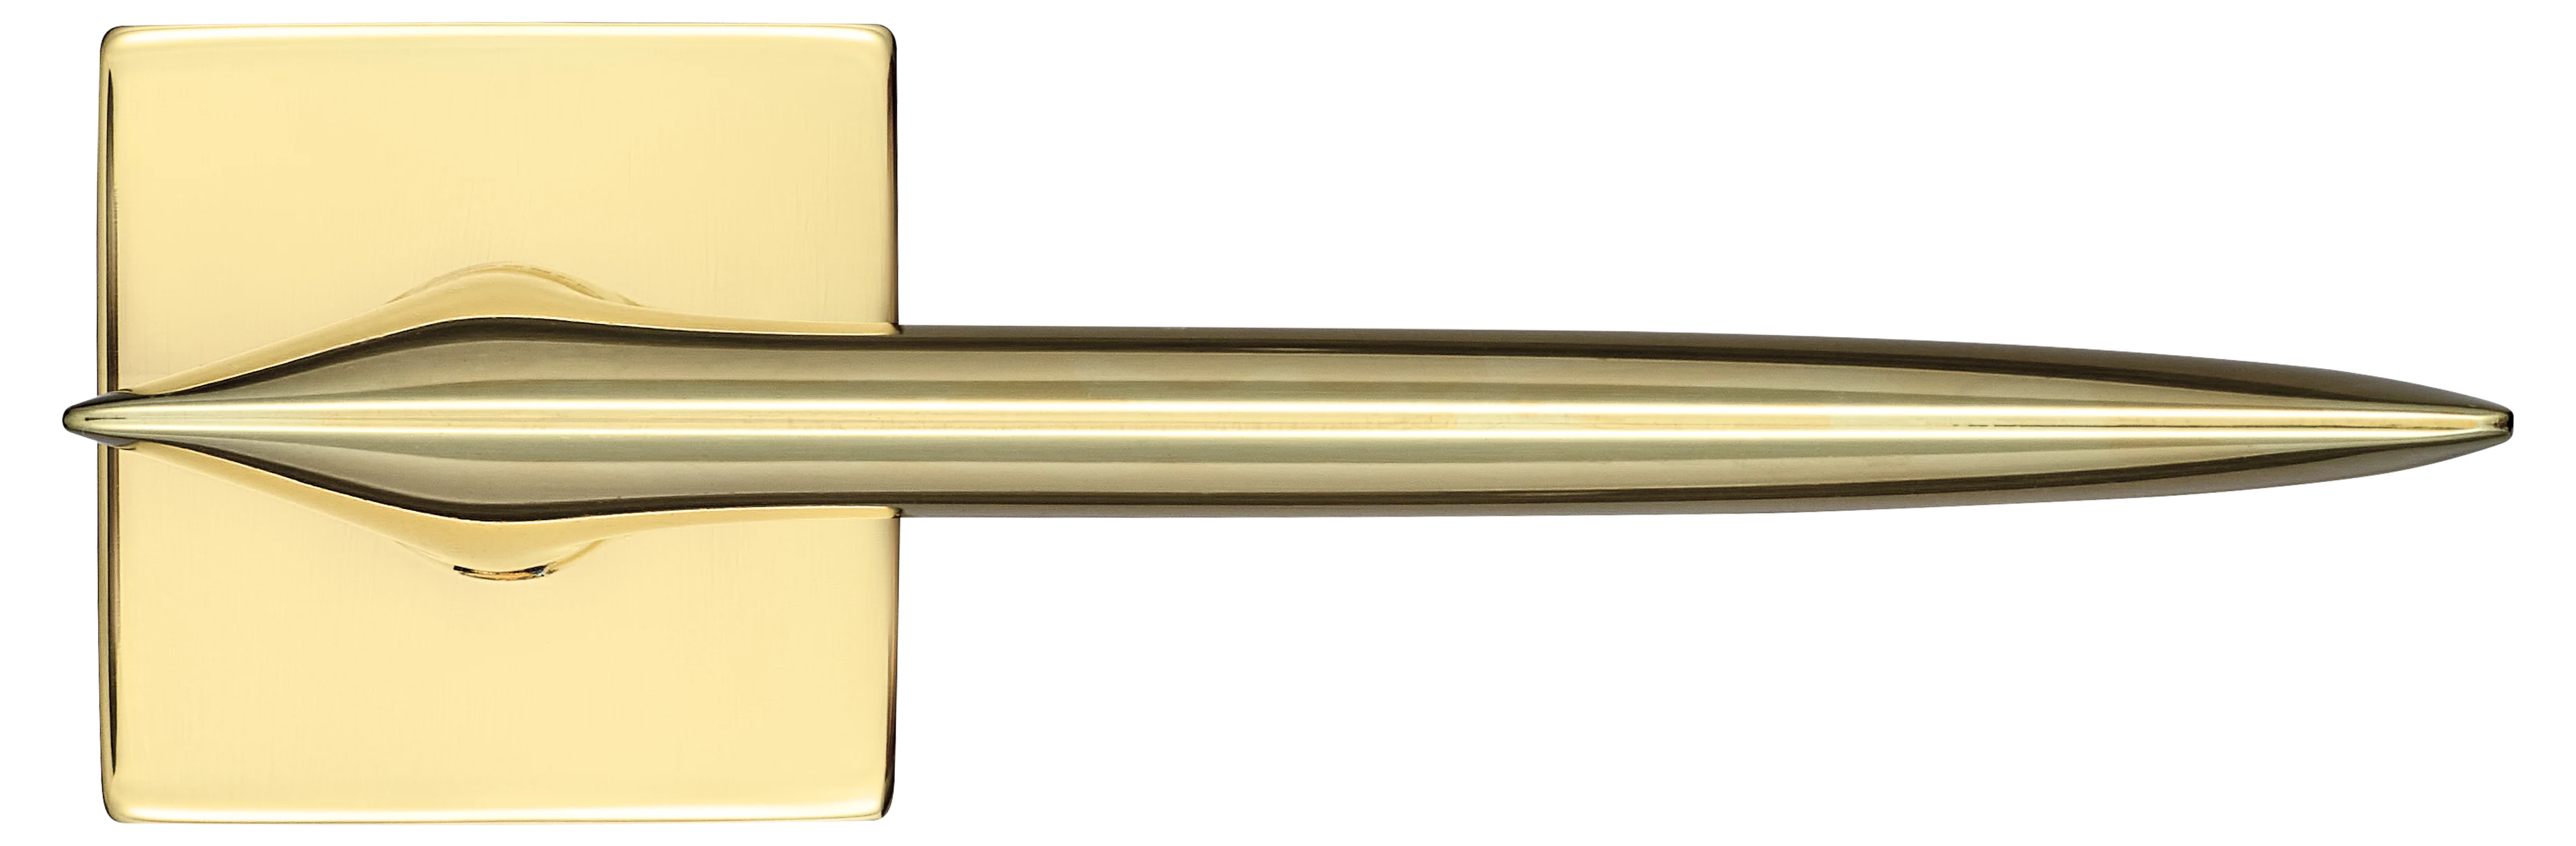 GALACTIC S5 OTL, ручка дверная, цвет -  золото фото купить в Уфе